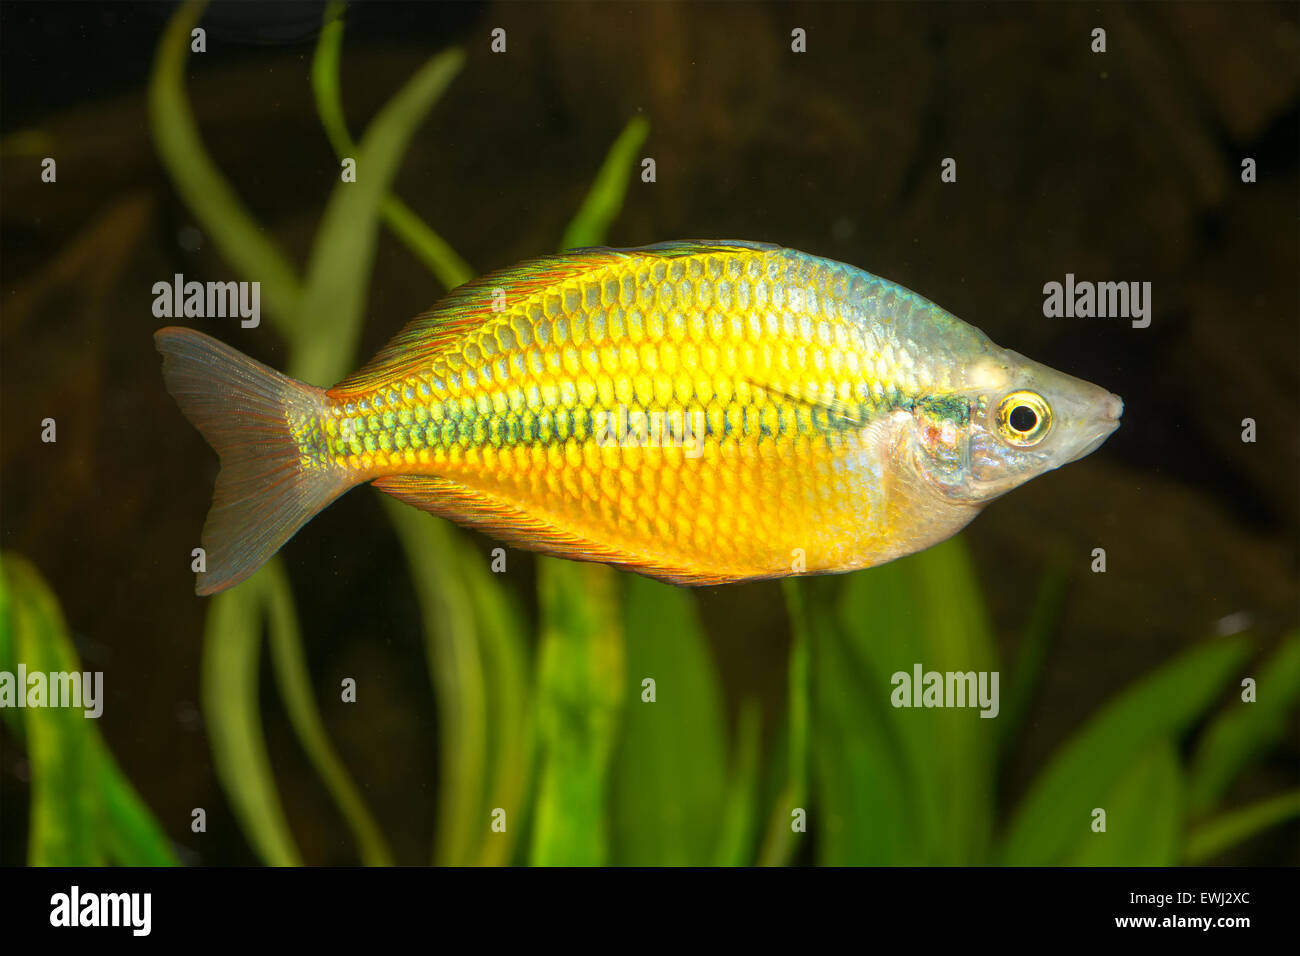 Rainbow fish from genus Melanotaenia in aquarium. Stock Photo